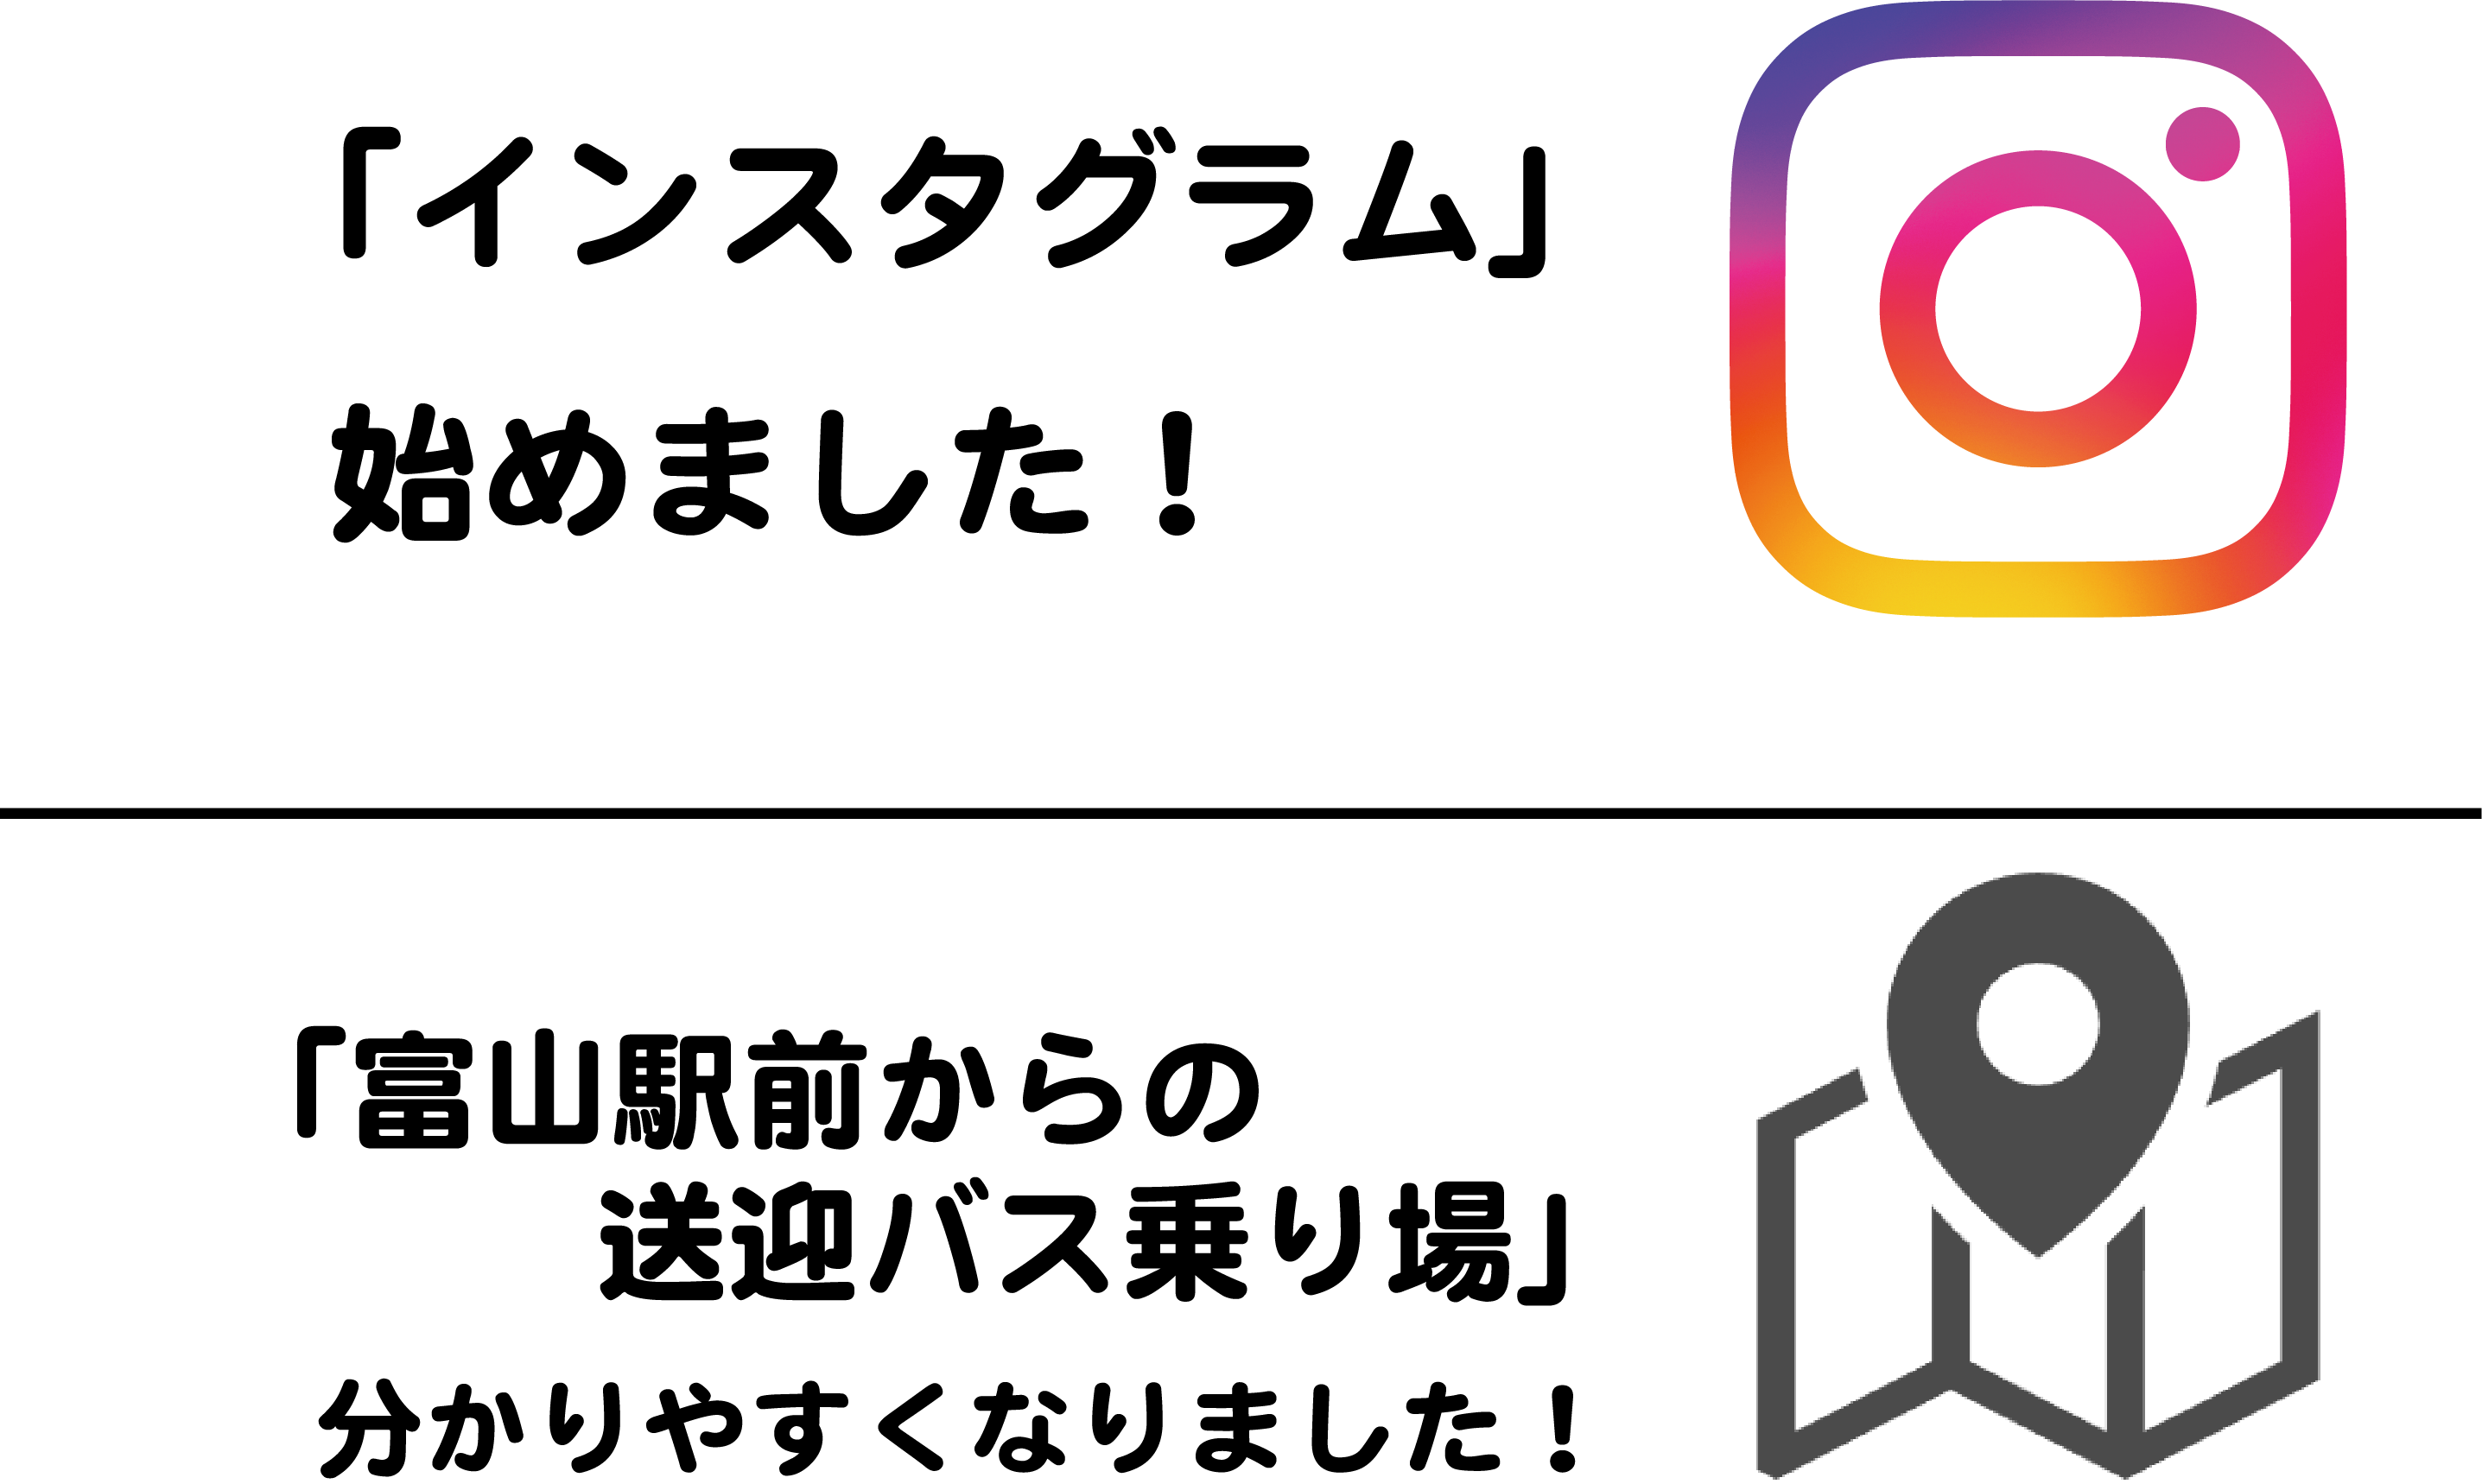 「Instagram」始めました！　　　　　　　　　　　　　　　　　　　　　　　　　　　　　　　　　　　現在位置から「富山駅前乗り場」までのナビ案内ご利用出来ます！